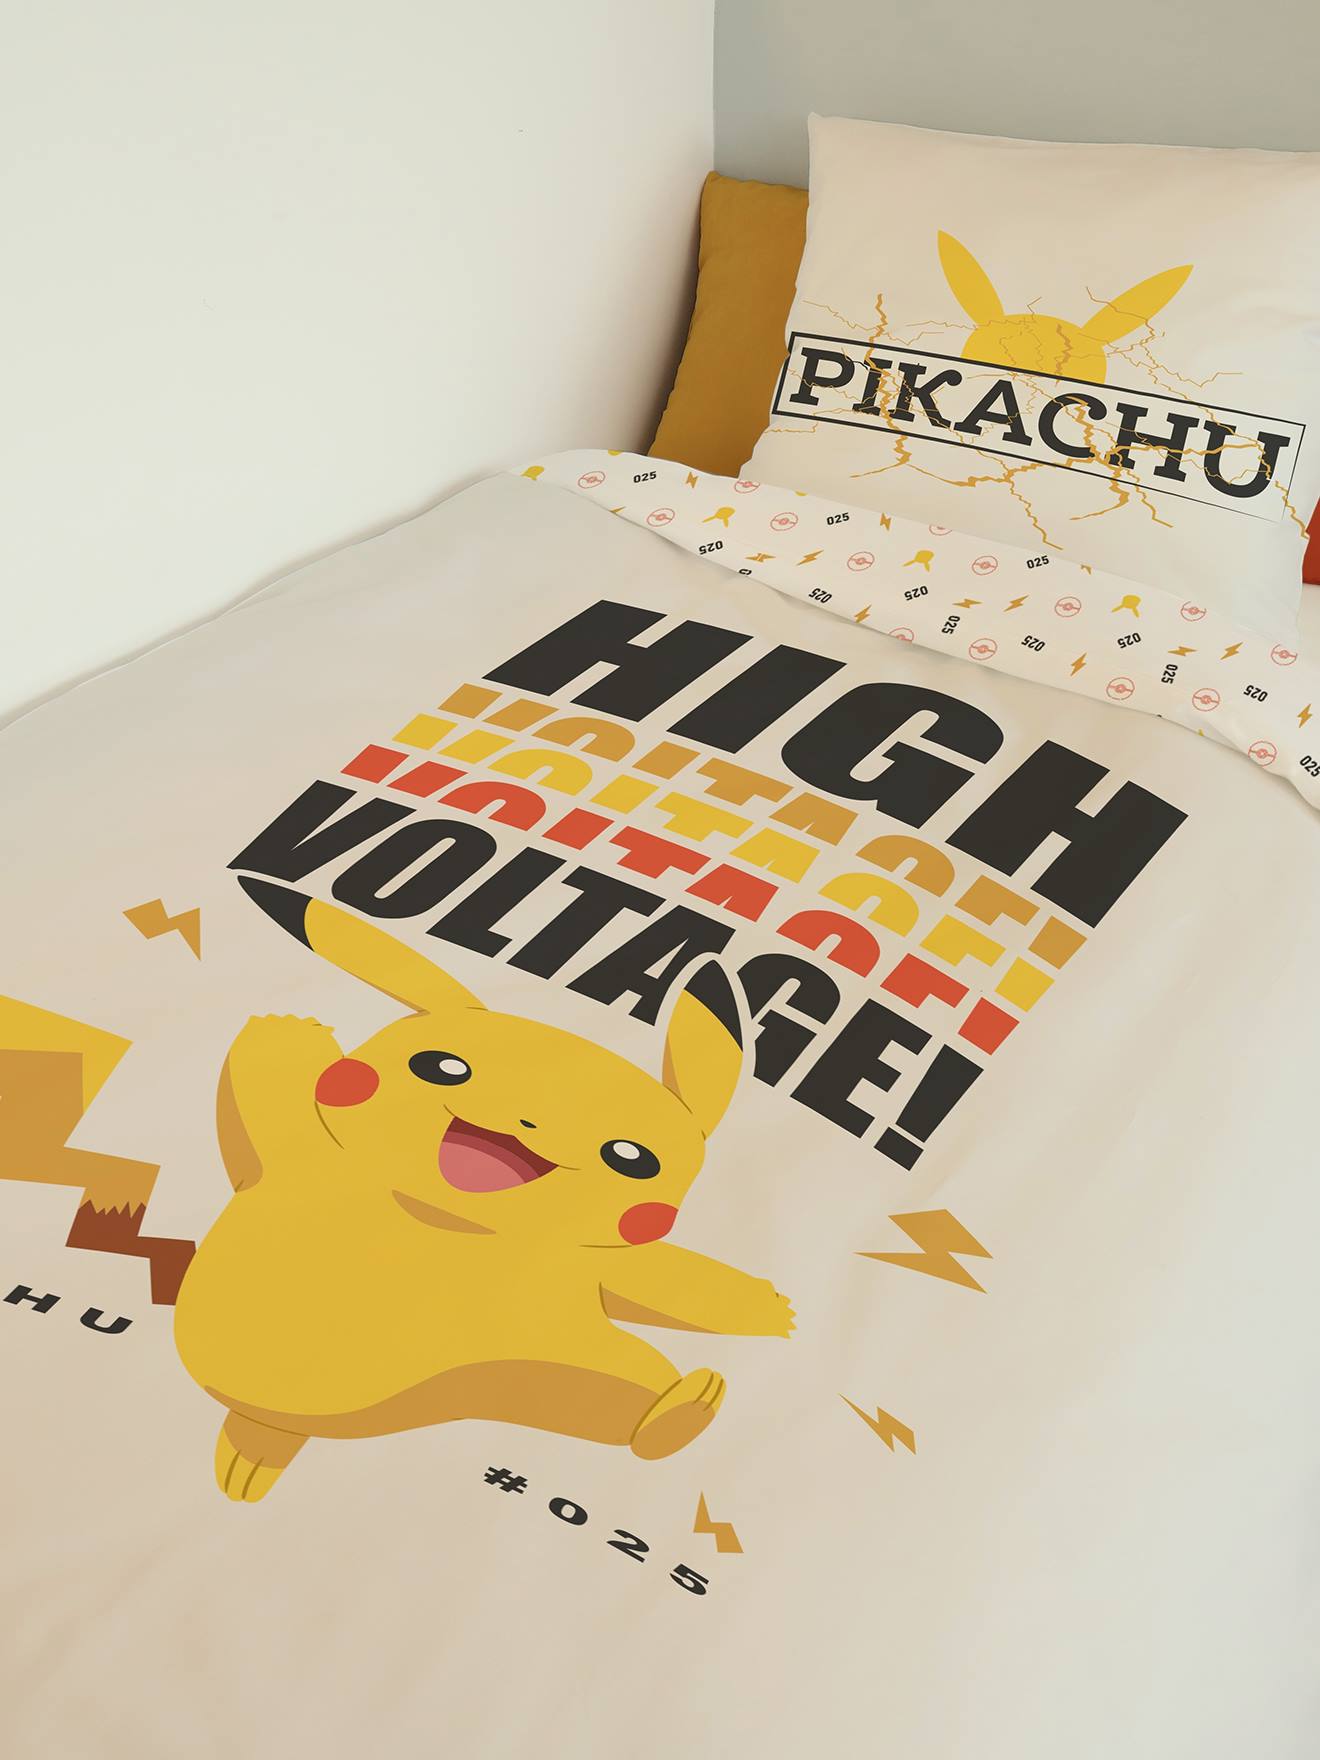 Parure Housse de Couette Pokémon Pikachu enfant bleu